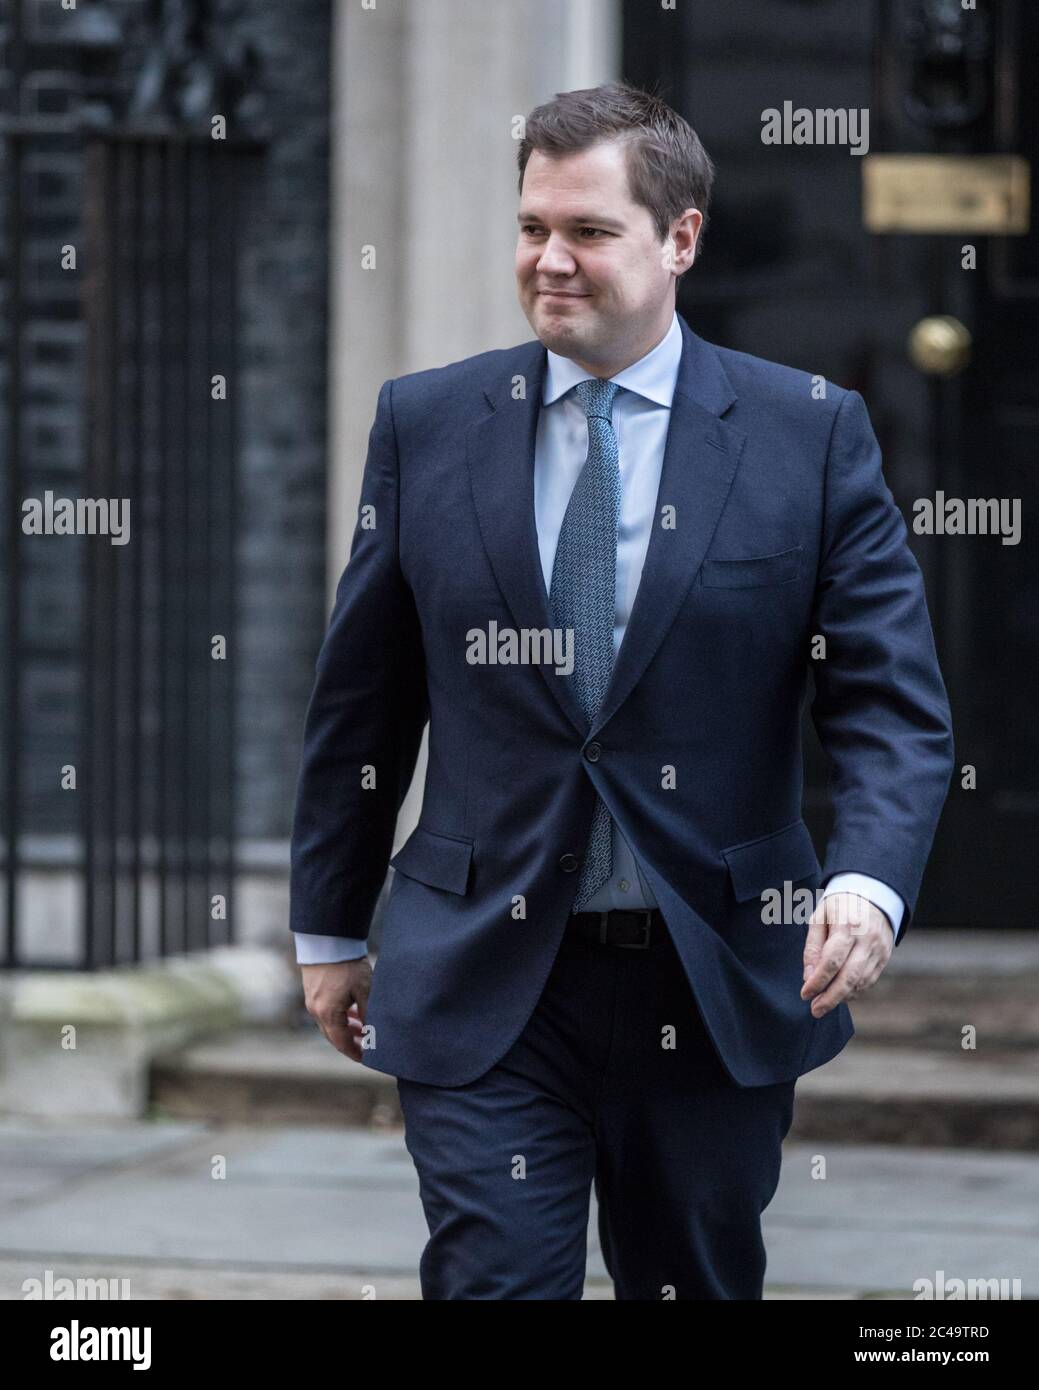 Robert Jenrick MP, Secretario de Estado de Vivienda, Comunidades y Gobierno local, político del Partido Conservador Británico, 10 Downing Street, Londres Foto de stock